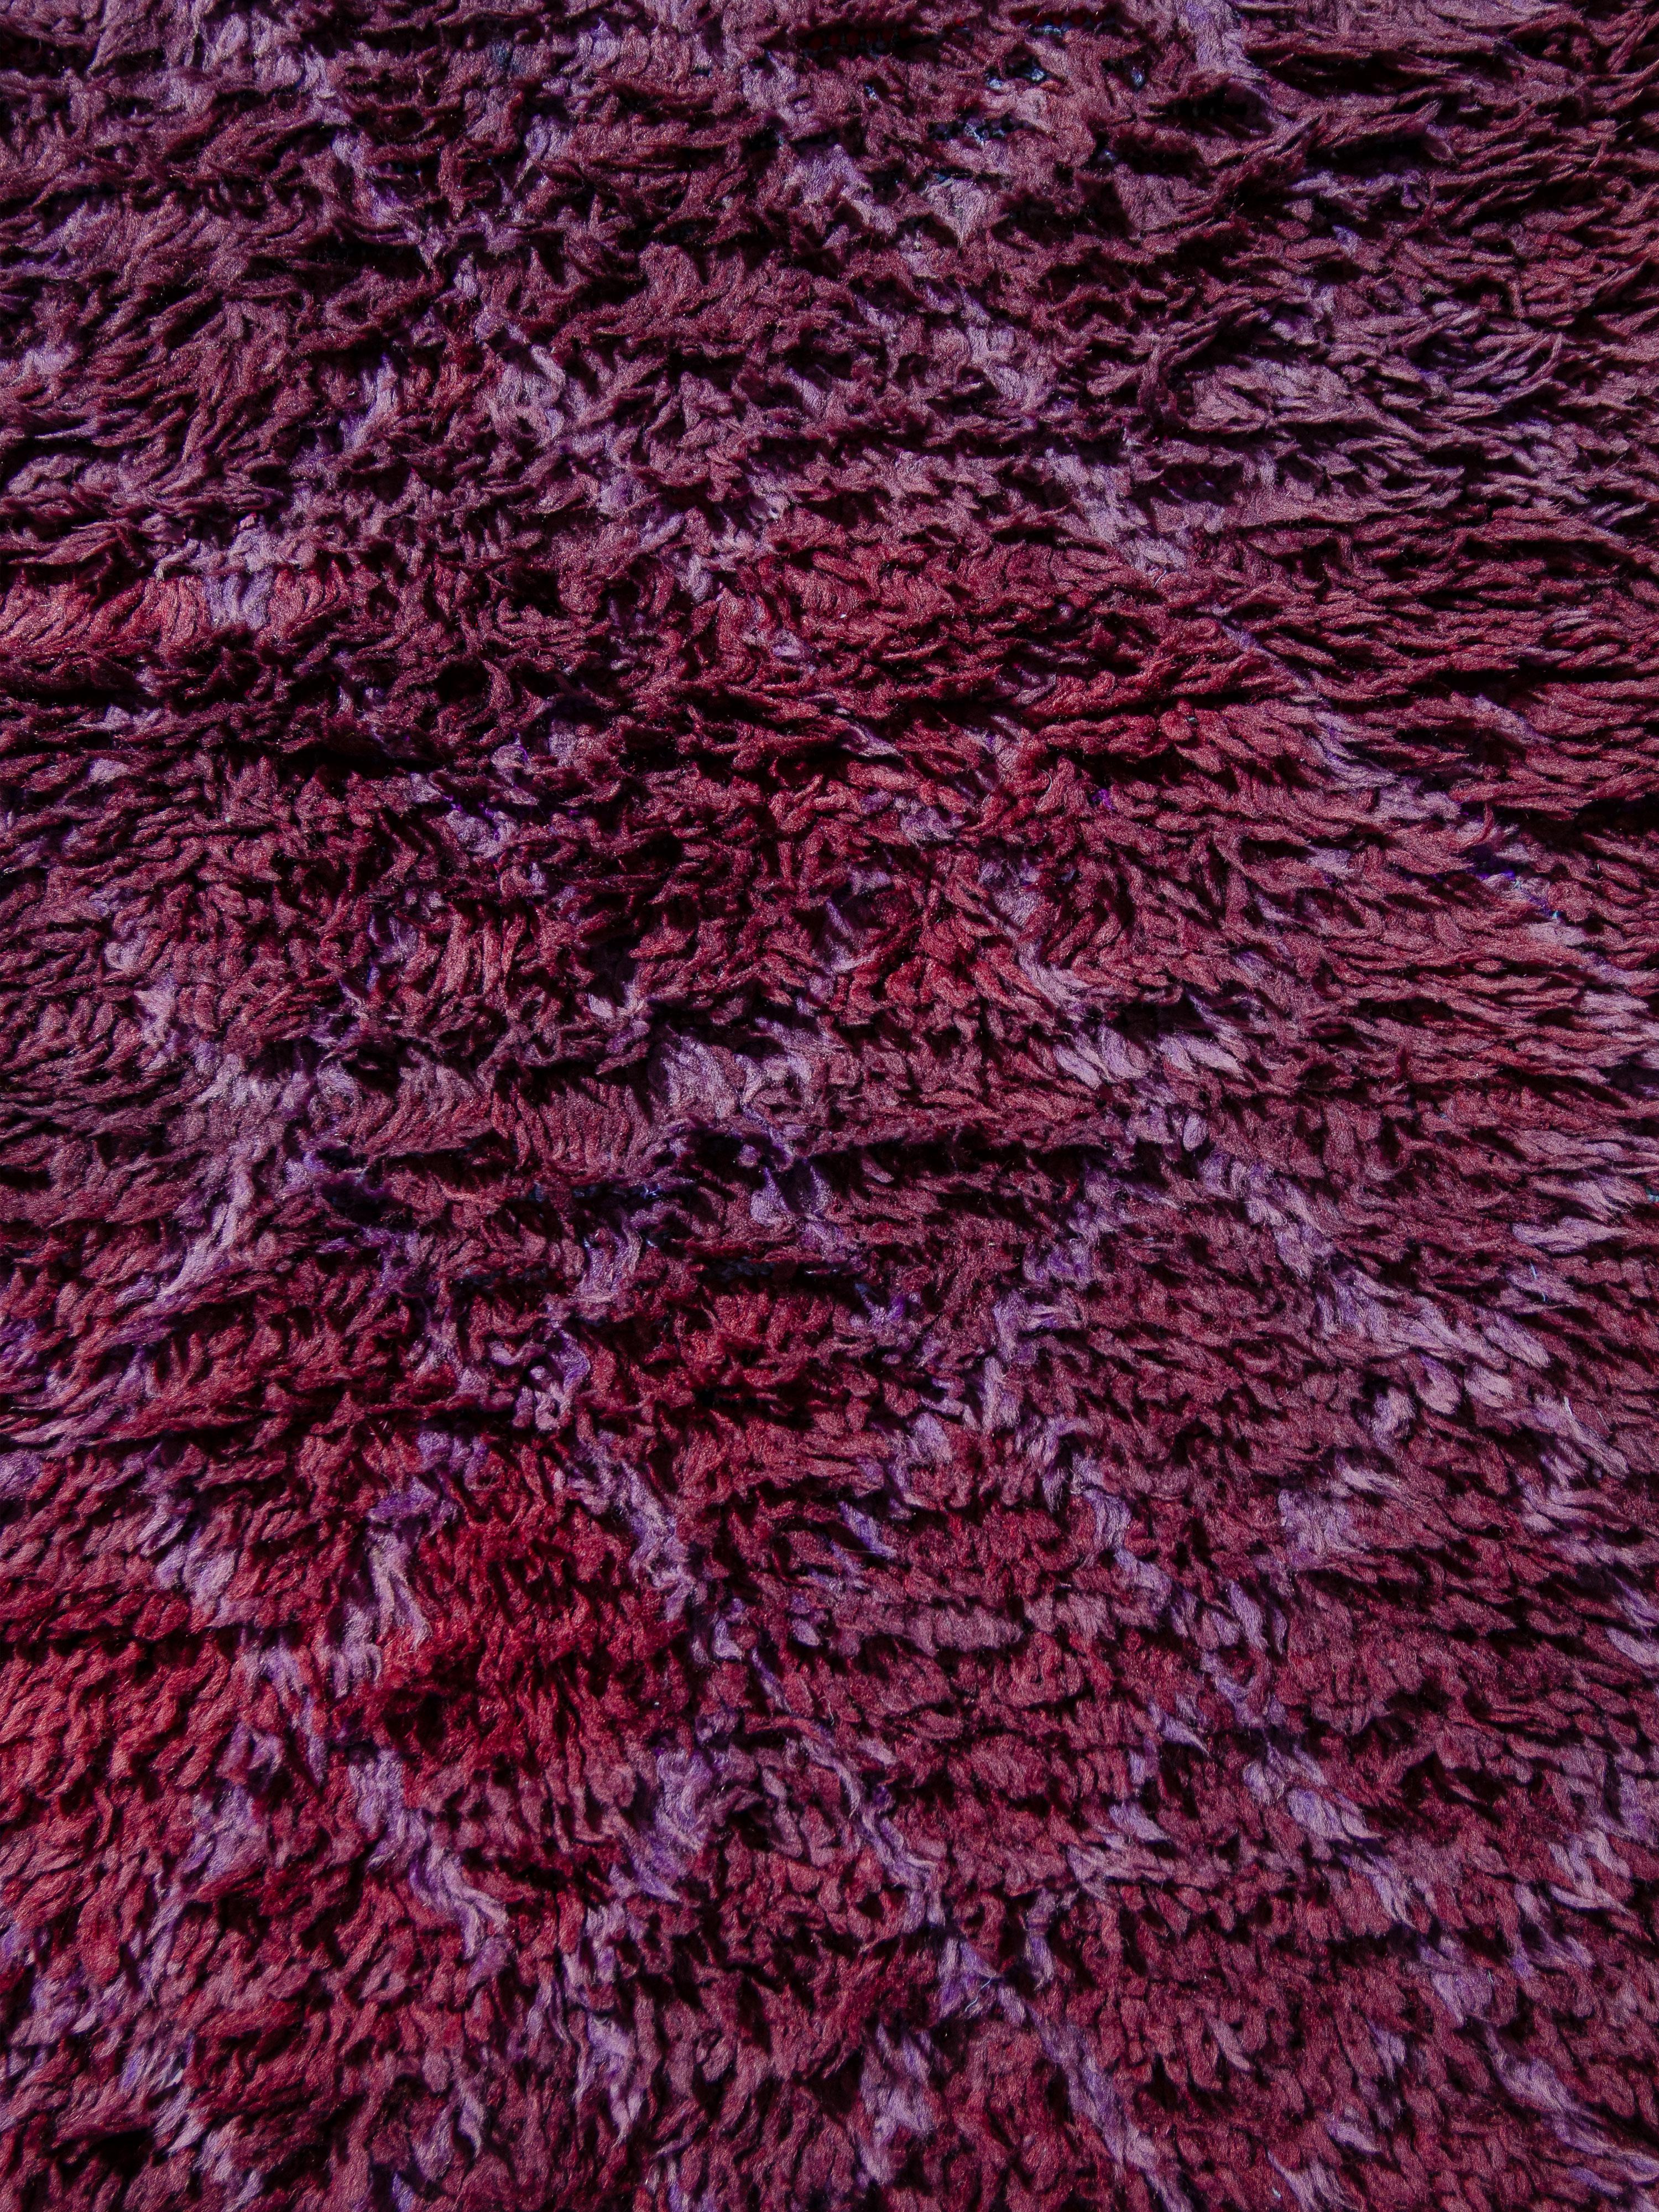 Un coureur minimaliste de Beni M'Guild avec un champ magenta abrasé contenant un réseau classique de losanges féminins noués dans une lavande contrastante plus claire. Le poil dense entièrement en laine présente un toucher dense. Une taille de